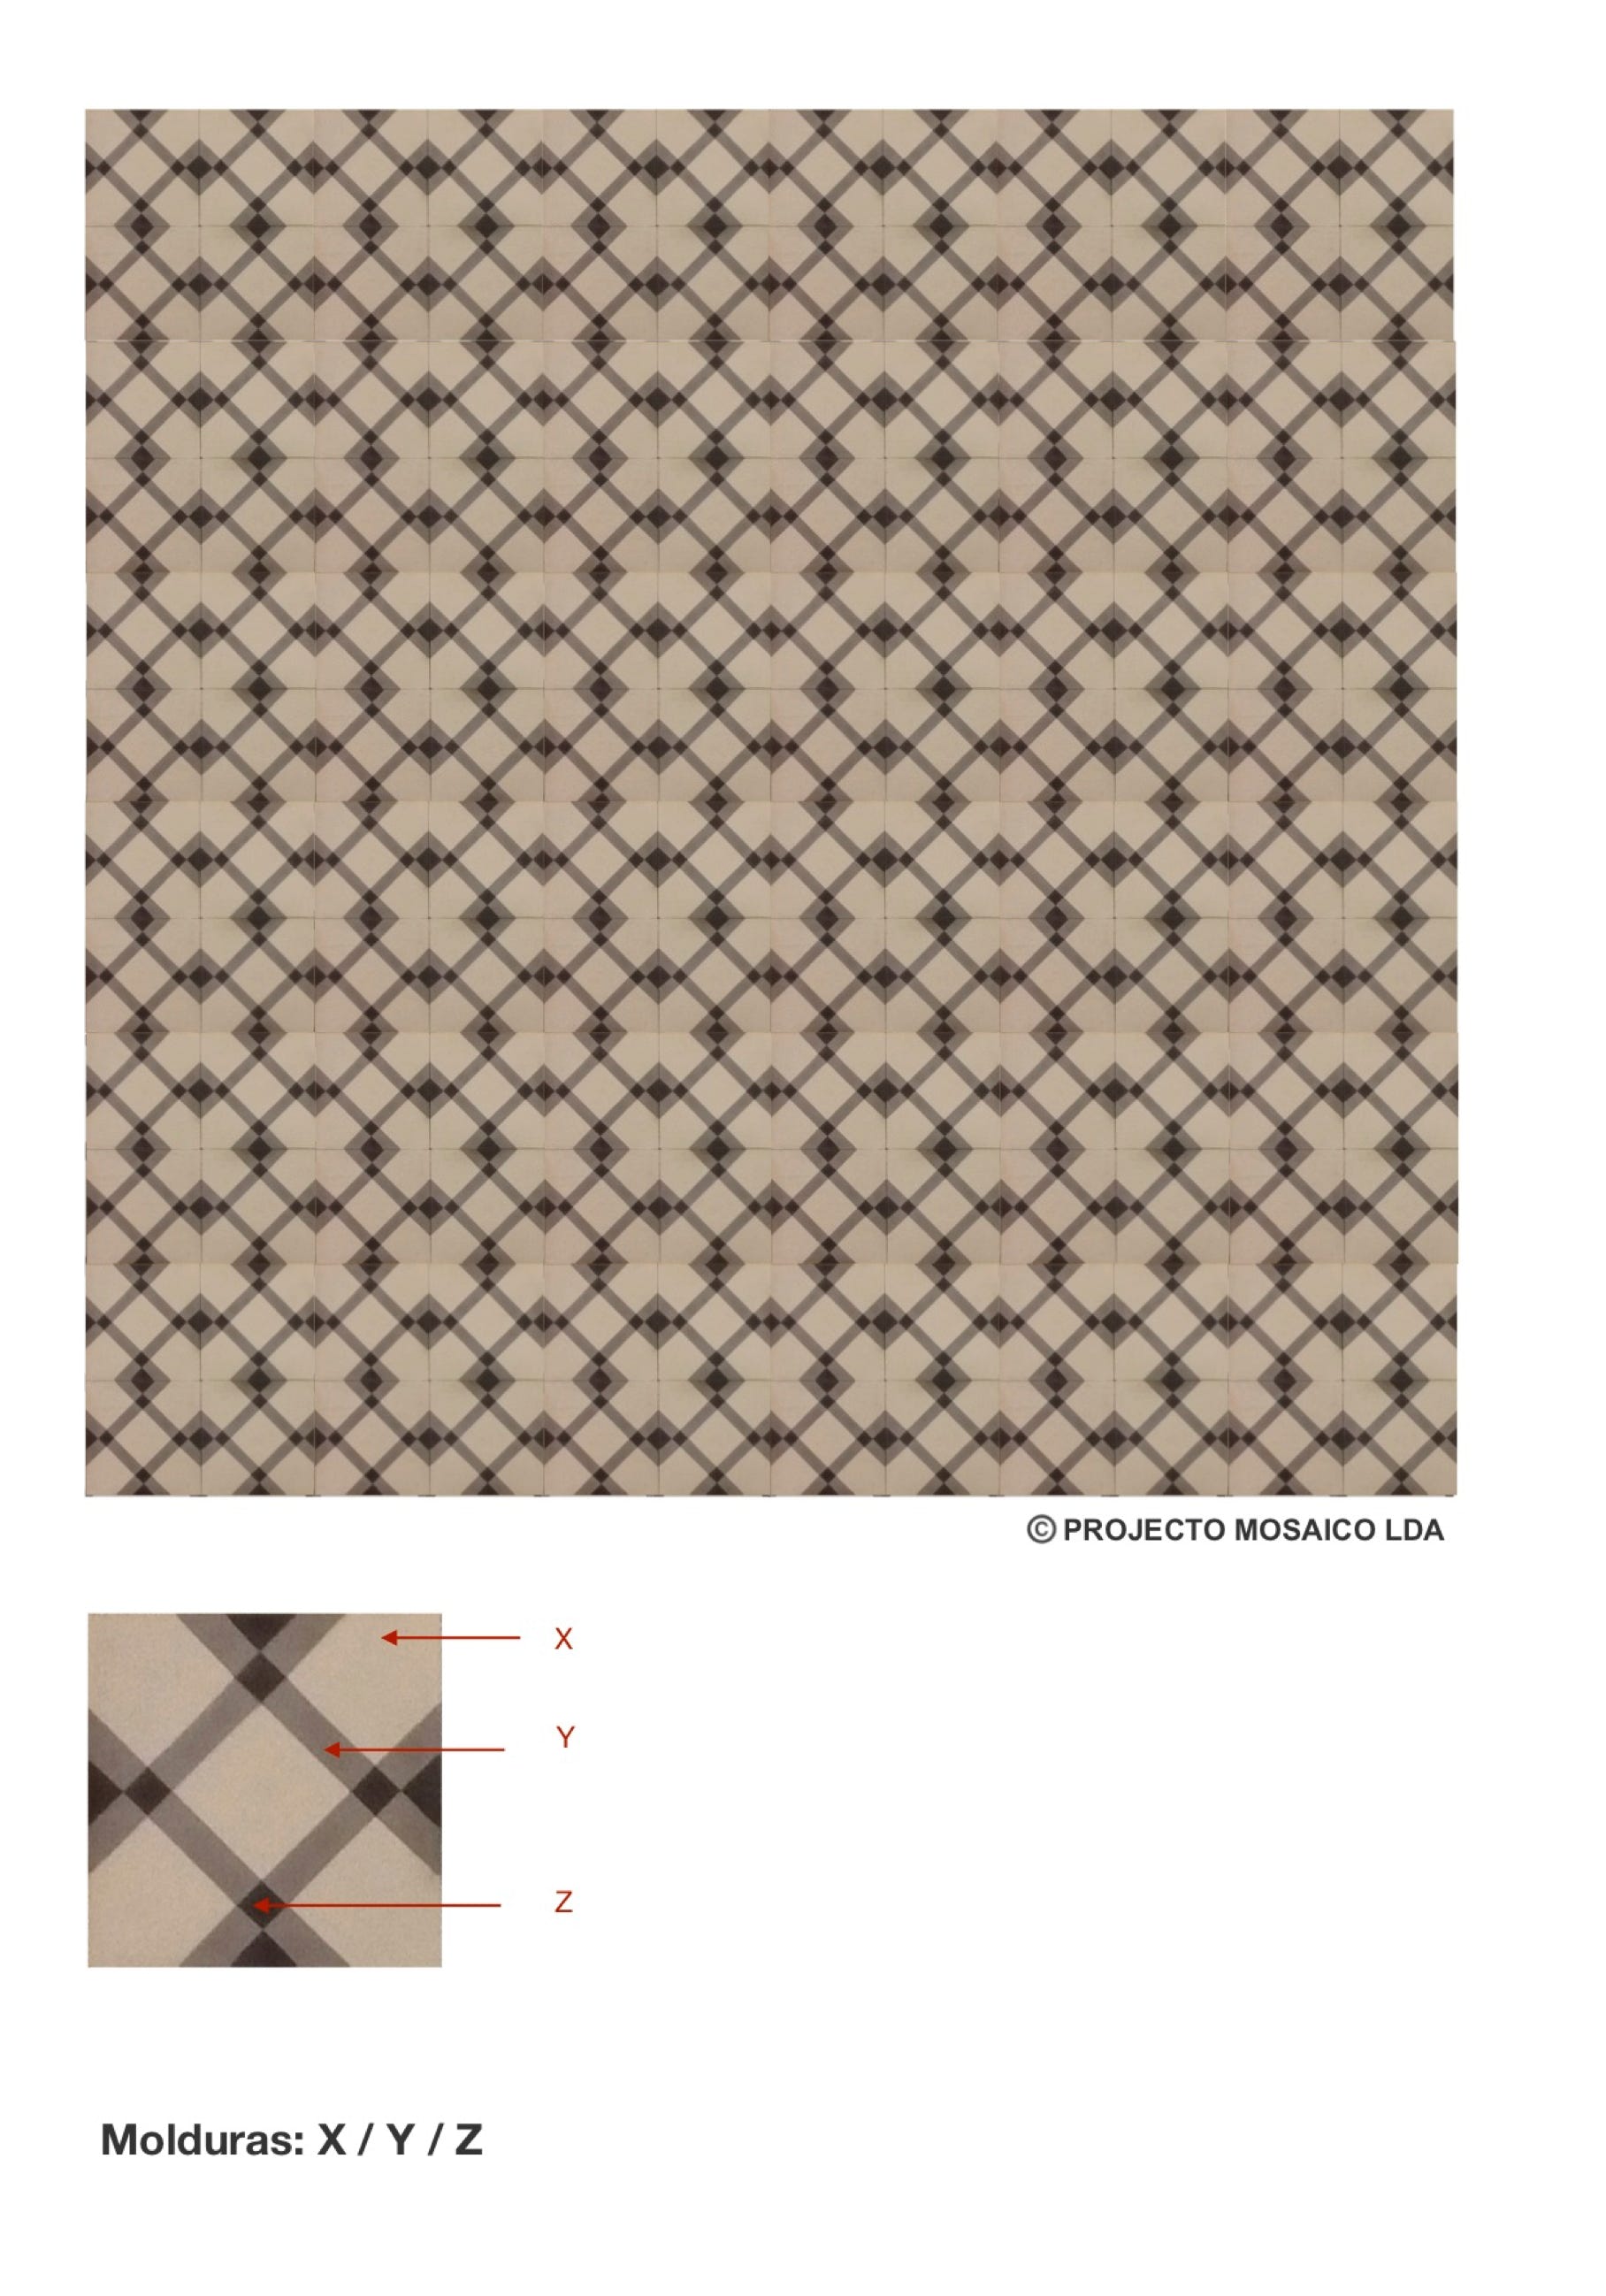 illustração de aplicação do mosaico hidráulico ref: Molduras